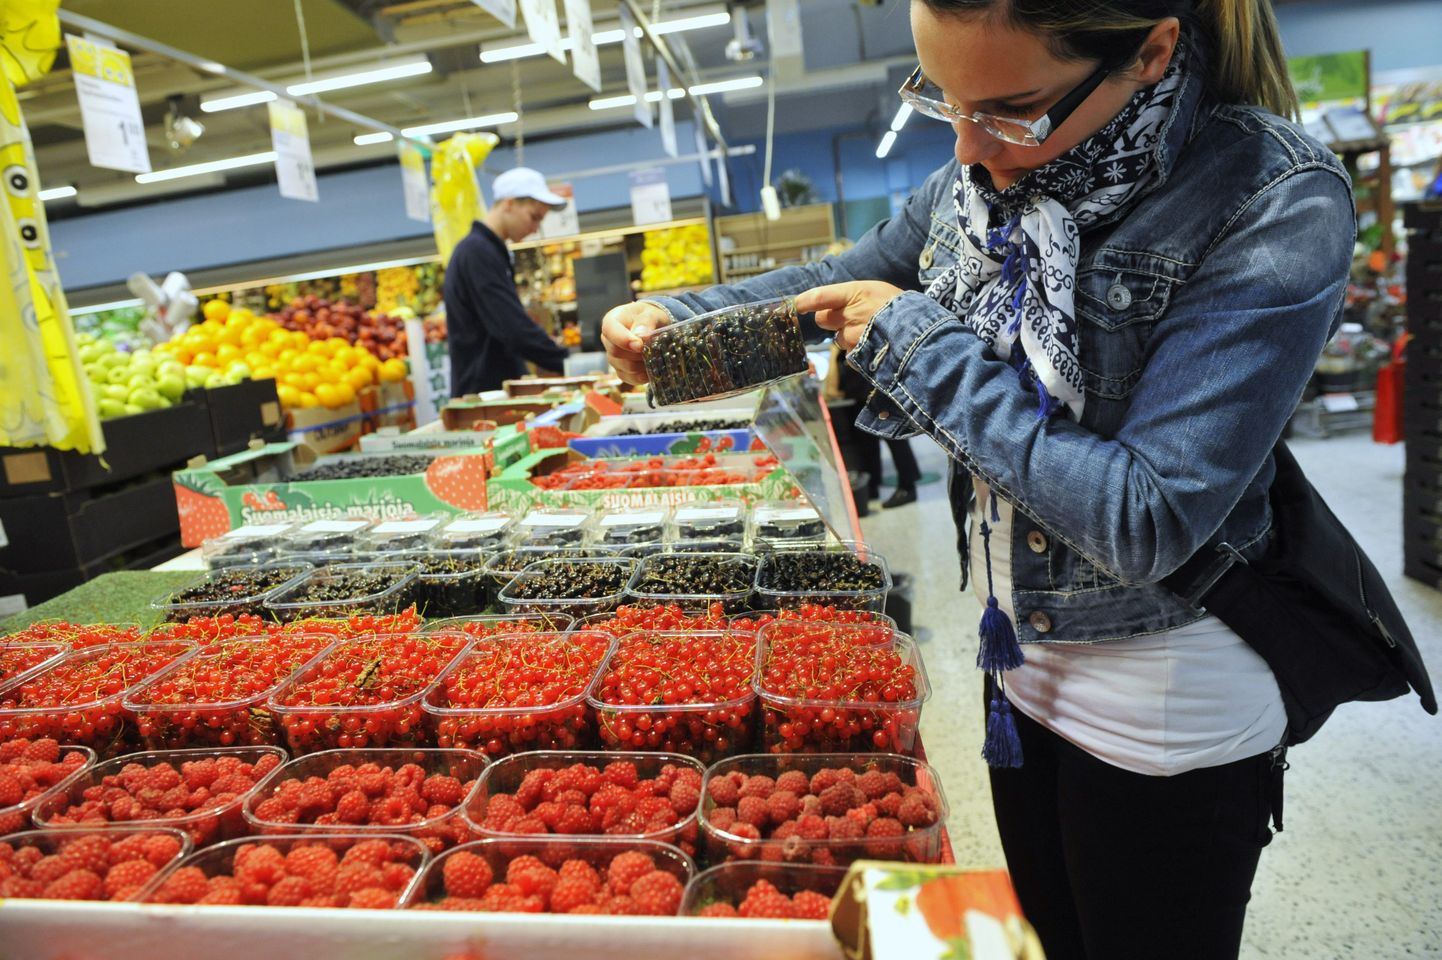 Soome neiu toidukaupluse puuviljaosakonnas. Soomes on toidukaupade hinnad langemas ja langevad lähikuudel veelgi, tulenevalt tooraine madalatest hindadest maailmaturul.